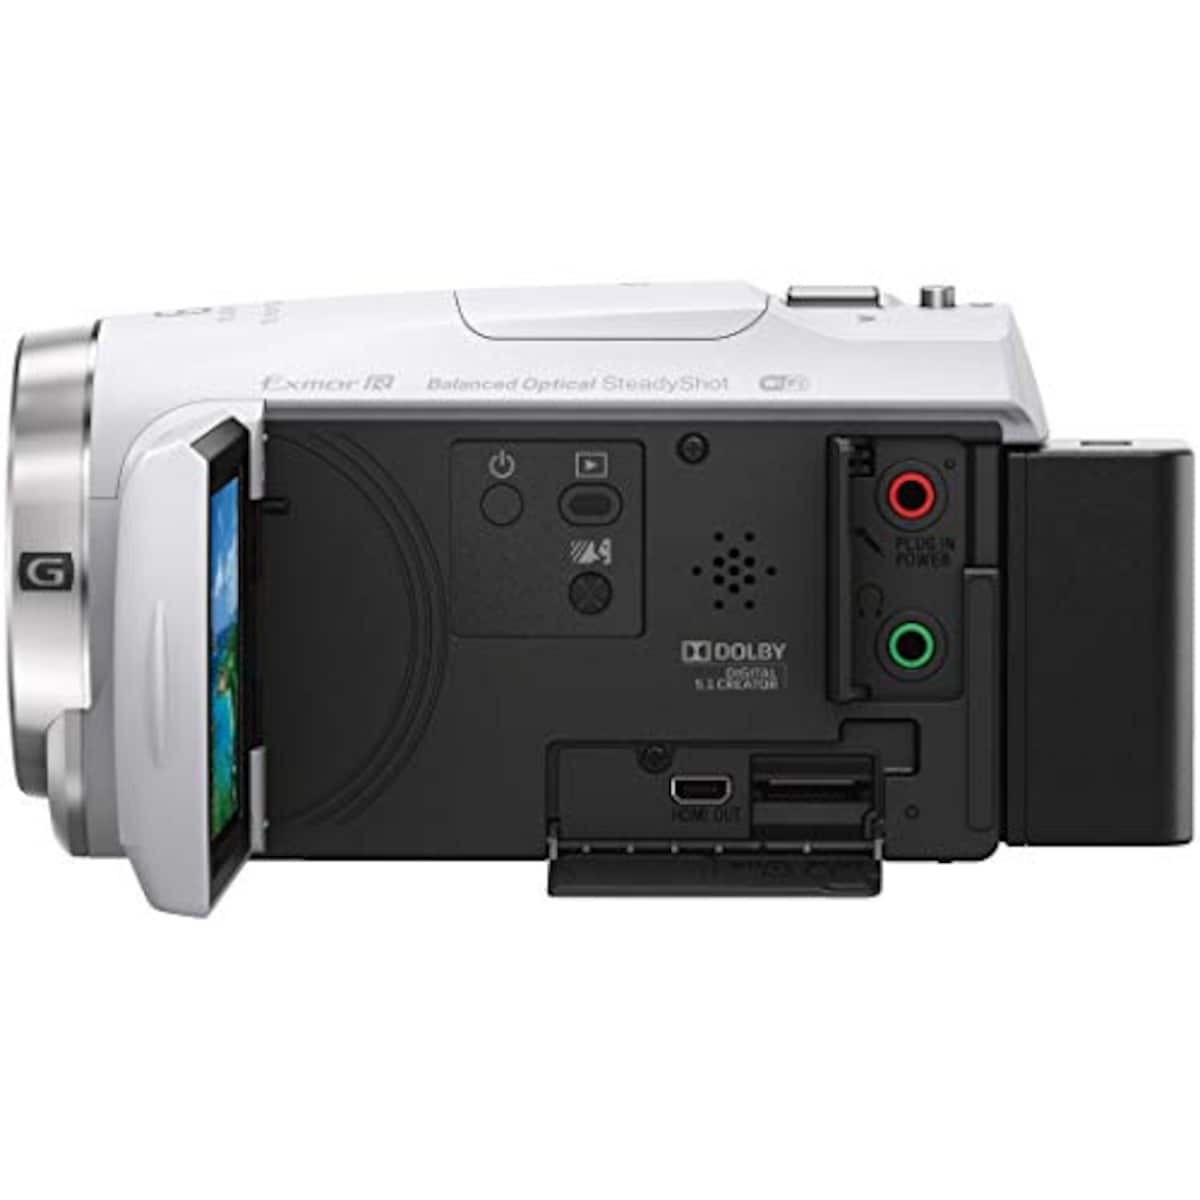  【CX680 と ケース&ストラップ セット】 大切なカメラをキズや汚れからガードしたい方に。HDR-CX680 ホワイト + LCS-MCS2 ライトブラウン画像15 